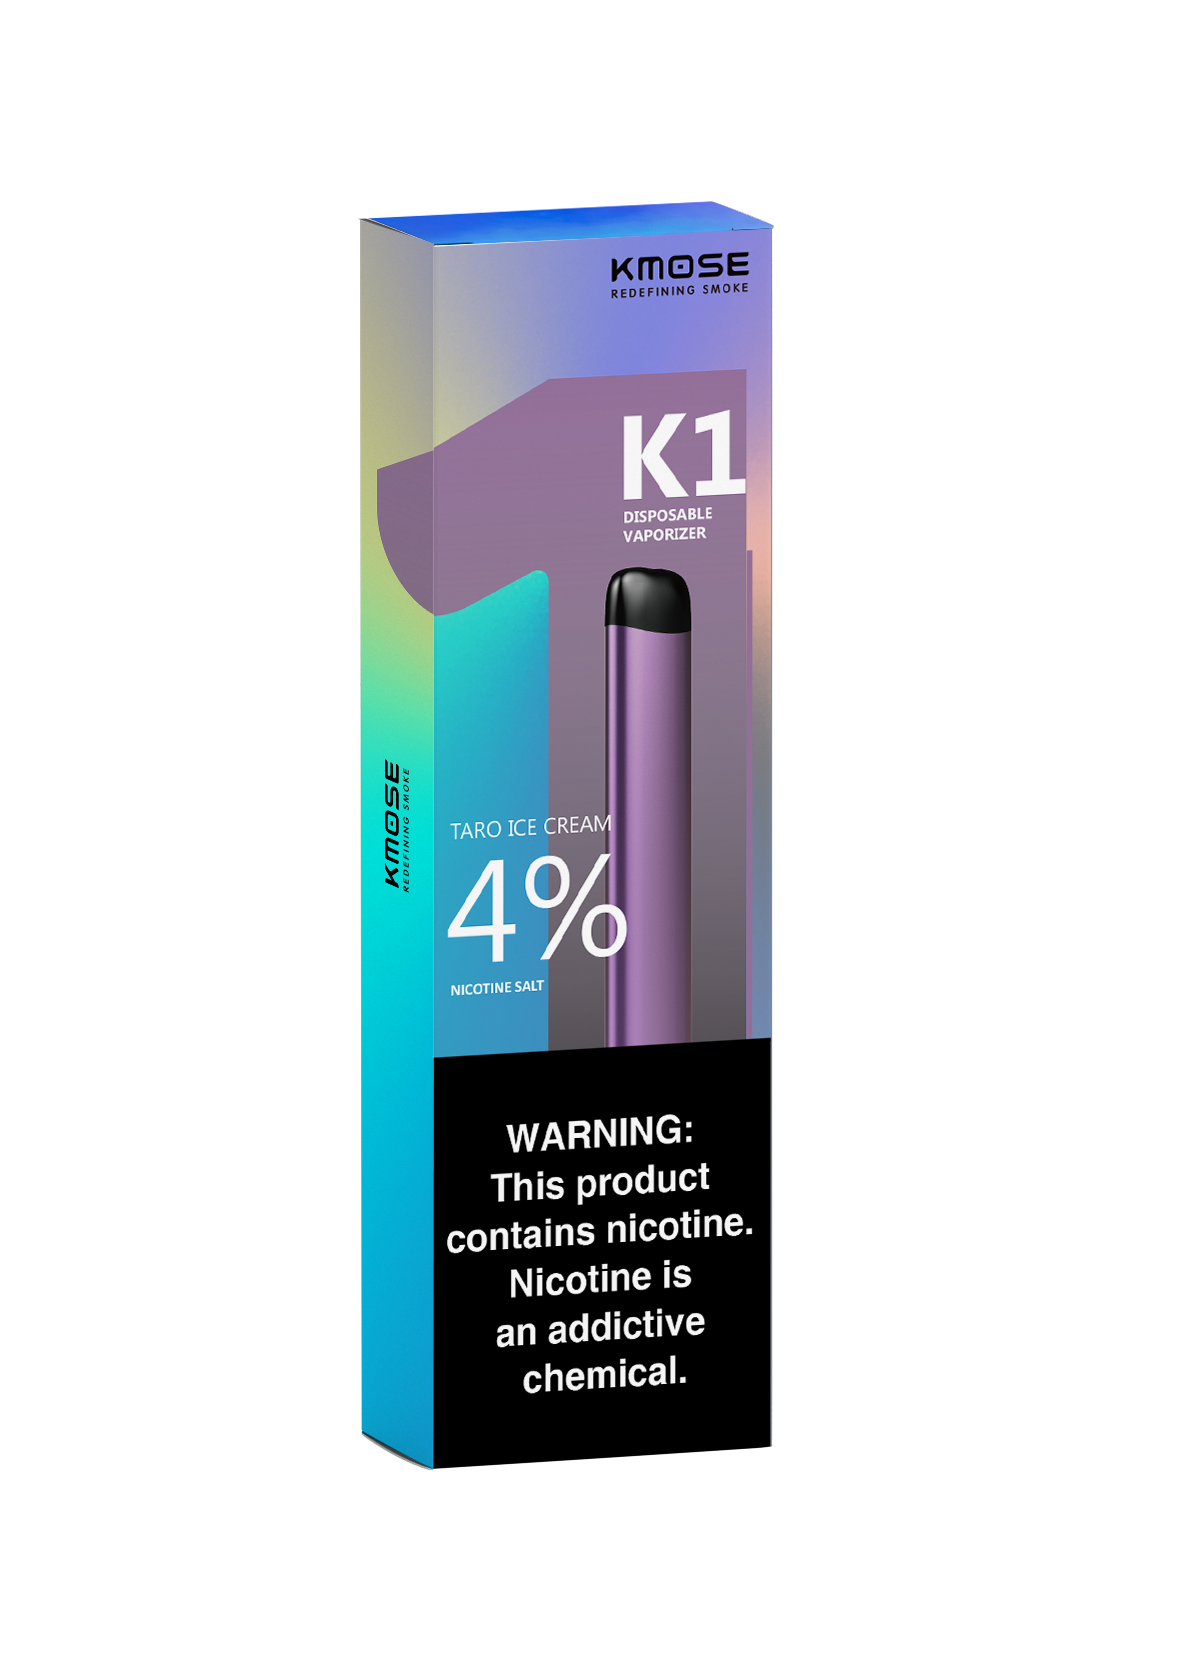 KMOSE K1包装图3